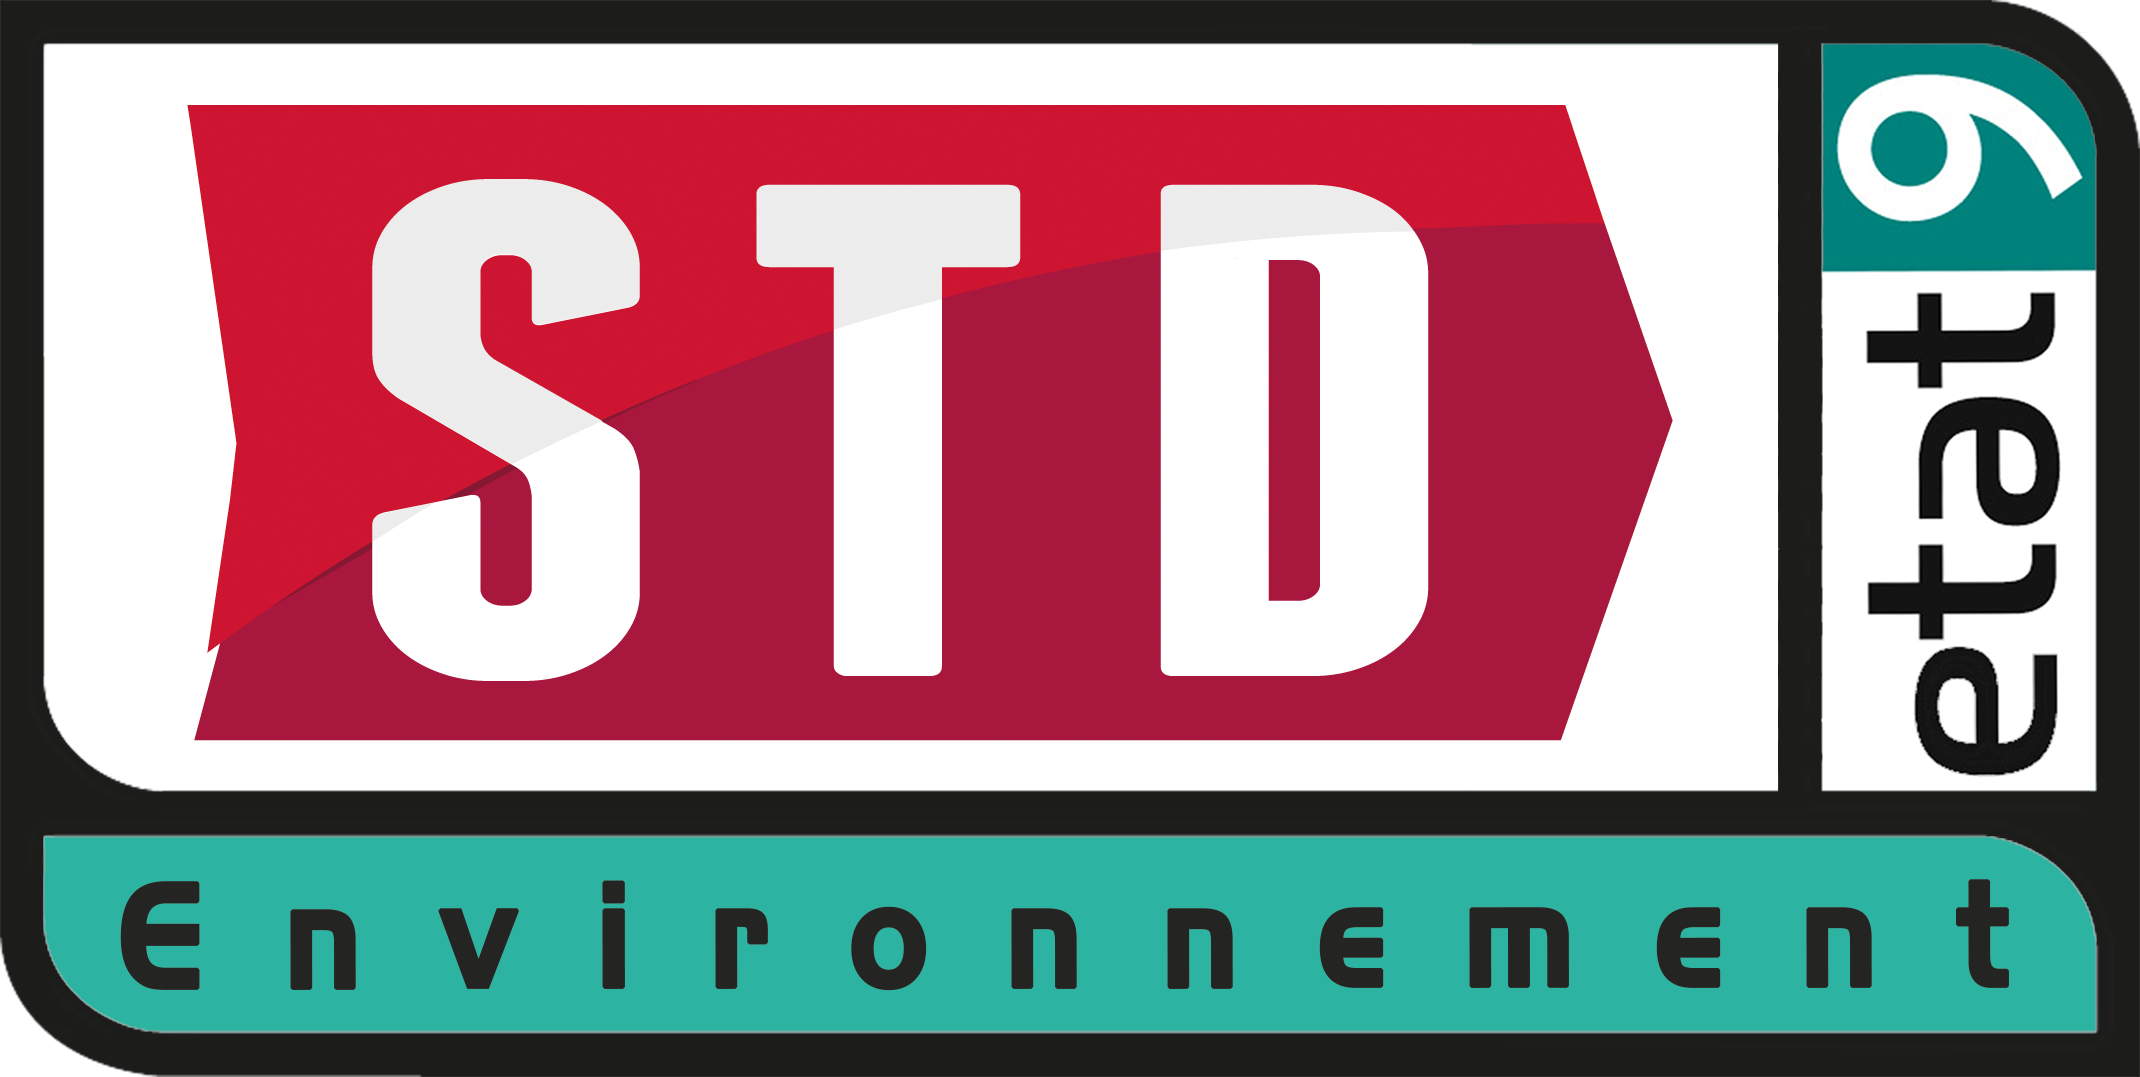 STD, spécialisée dans les travaux de démantèlement, dépollution et gestion des déchets